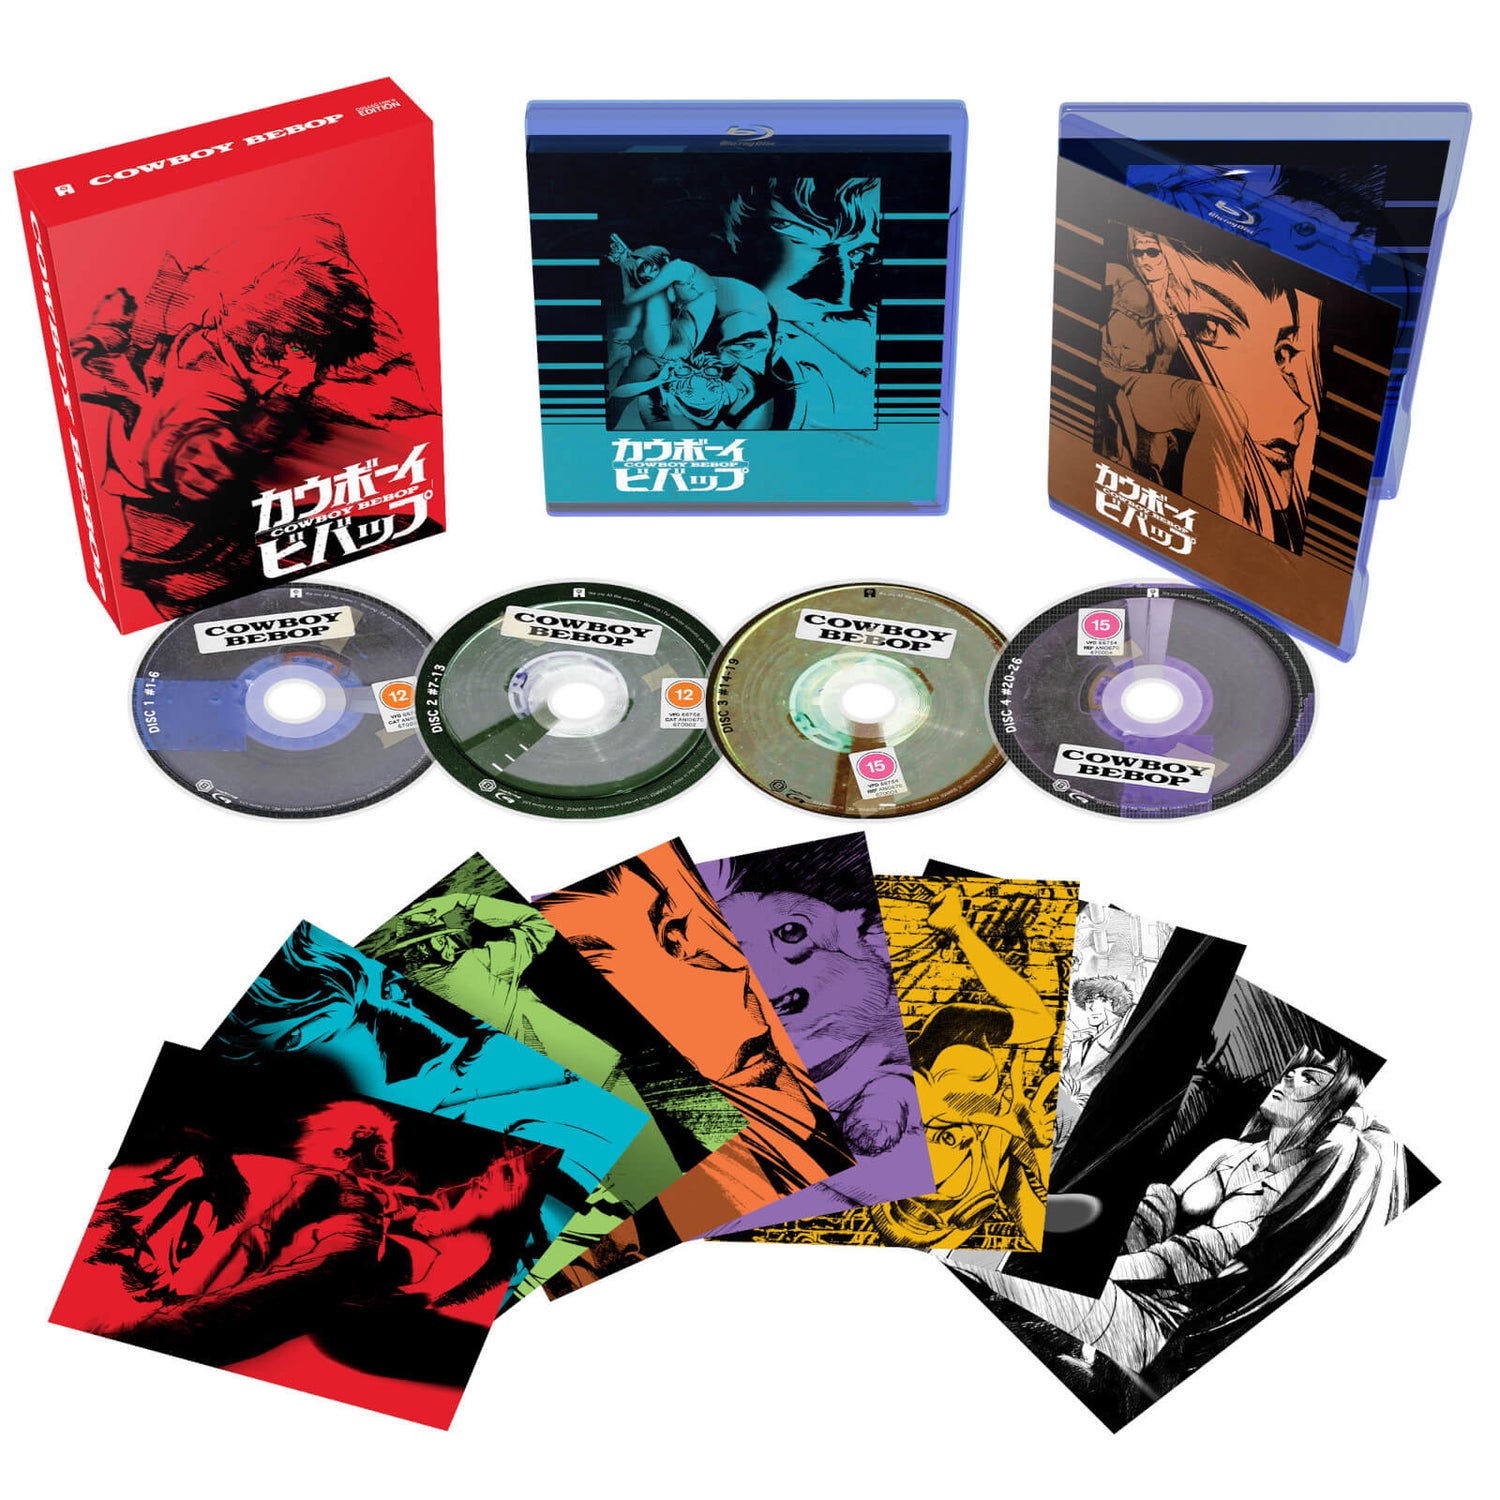 Cowboy Bebop Collectors Edition - Limited Edition